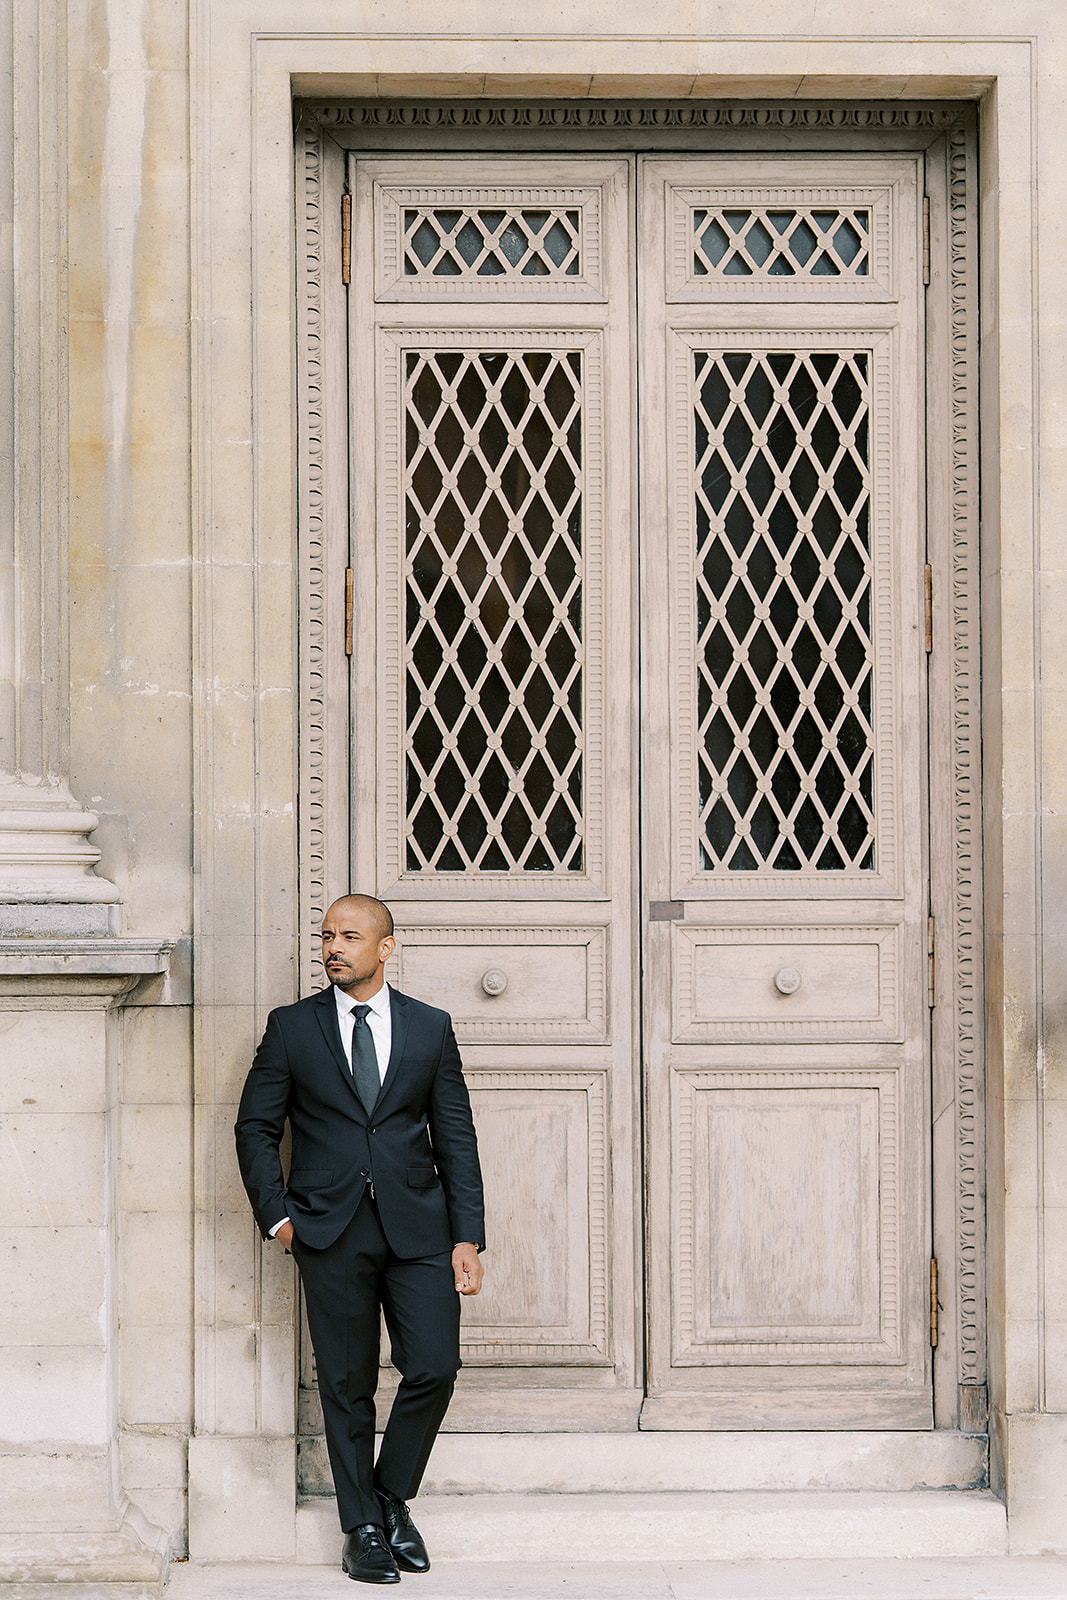 The best Louvre Museum Paris Engagement photos | Chernogorov Photography Destination Wedding Photographers